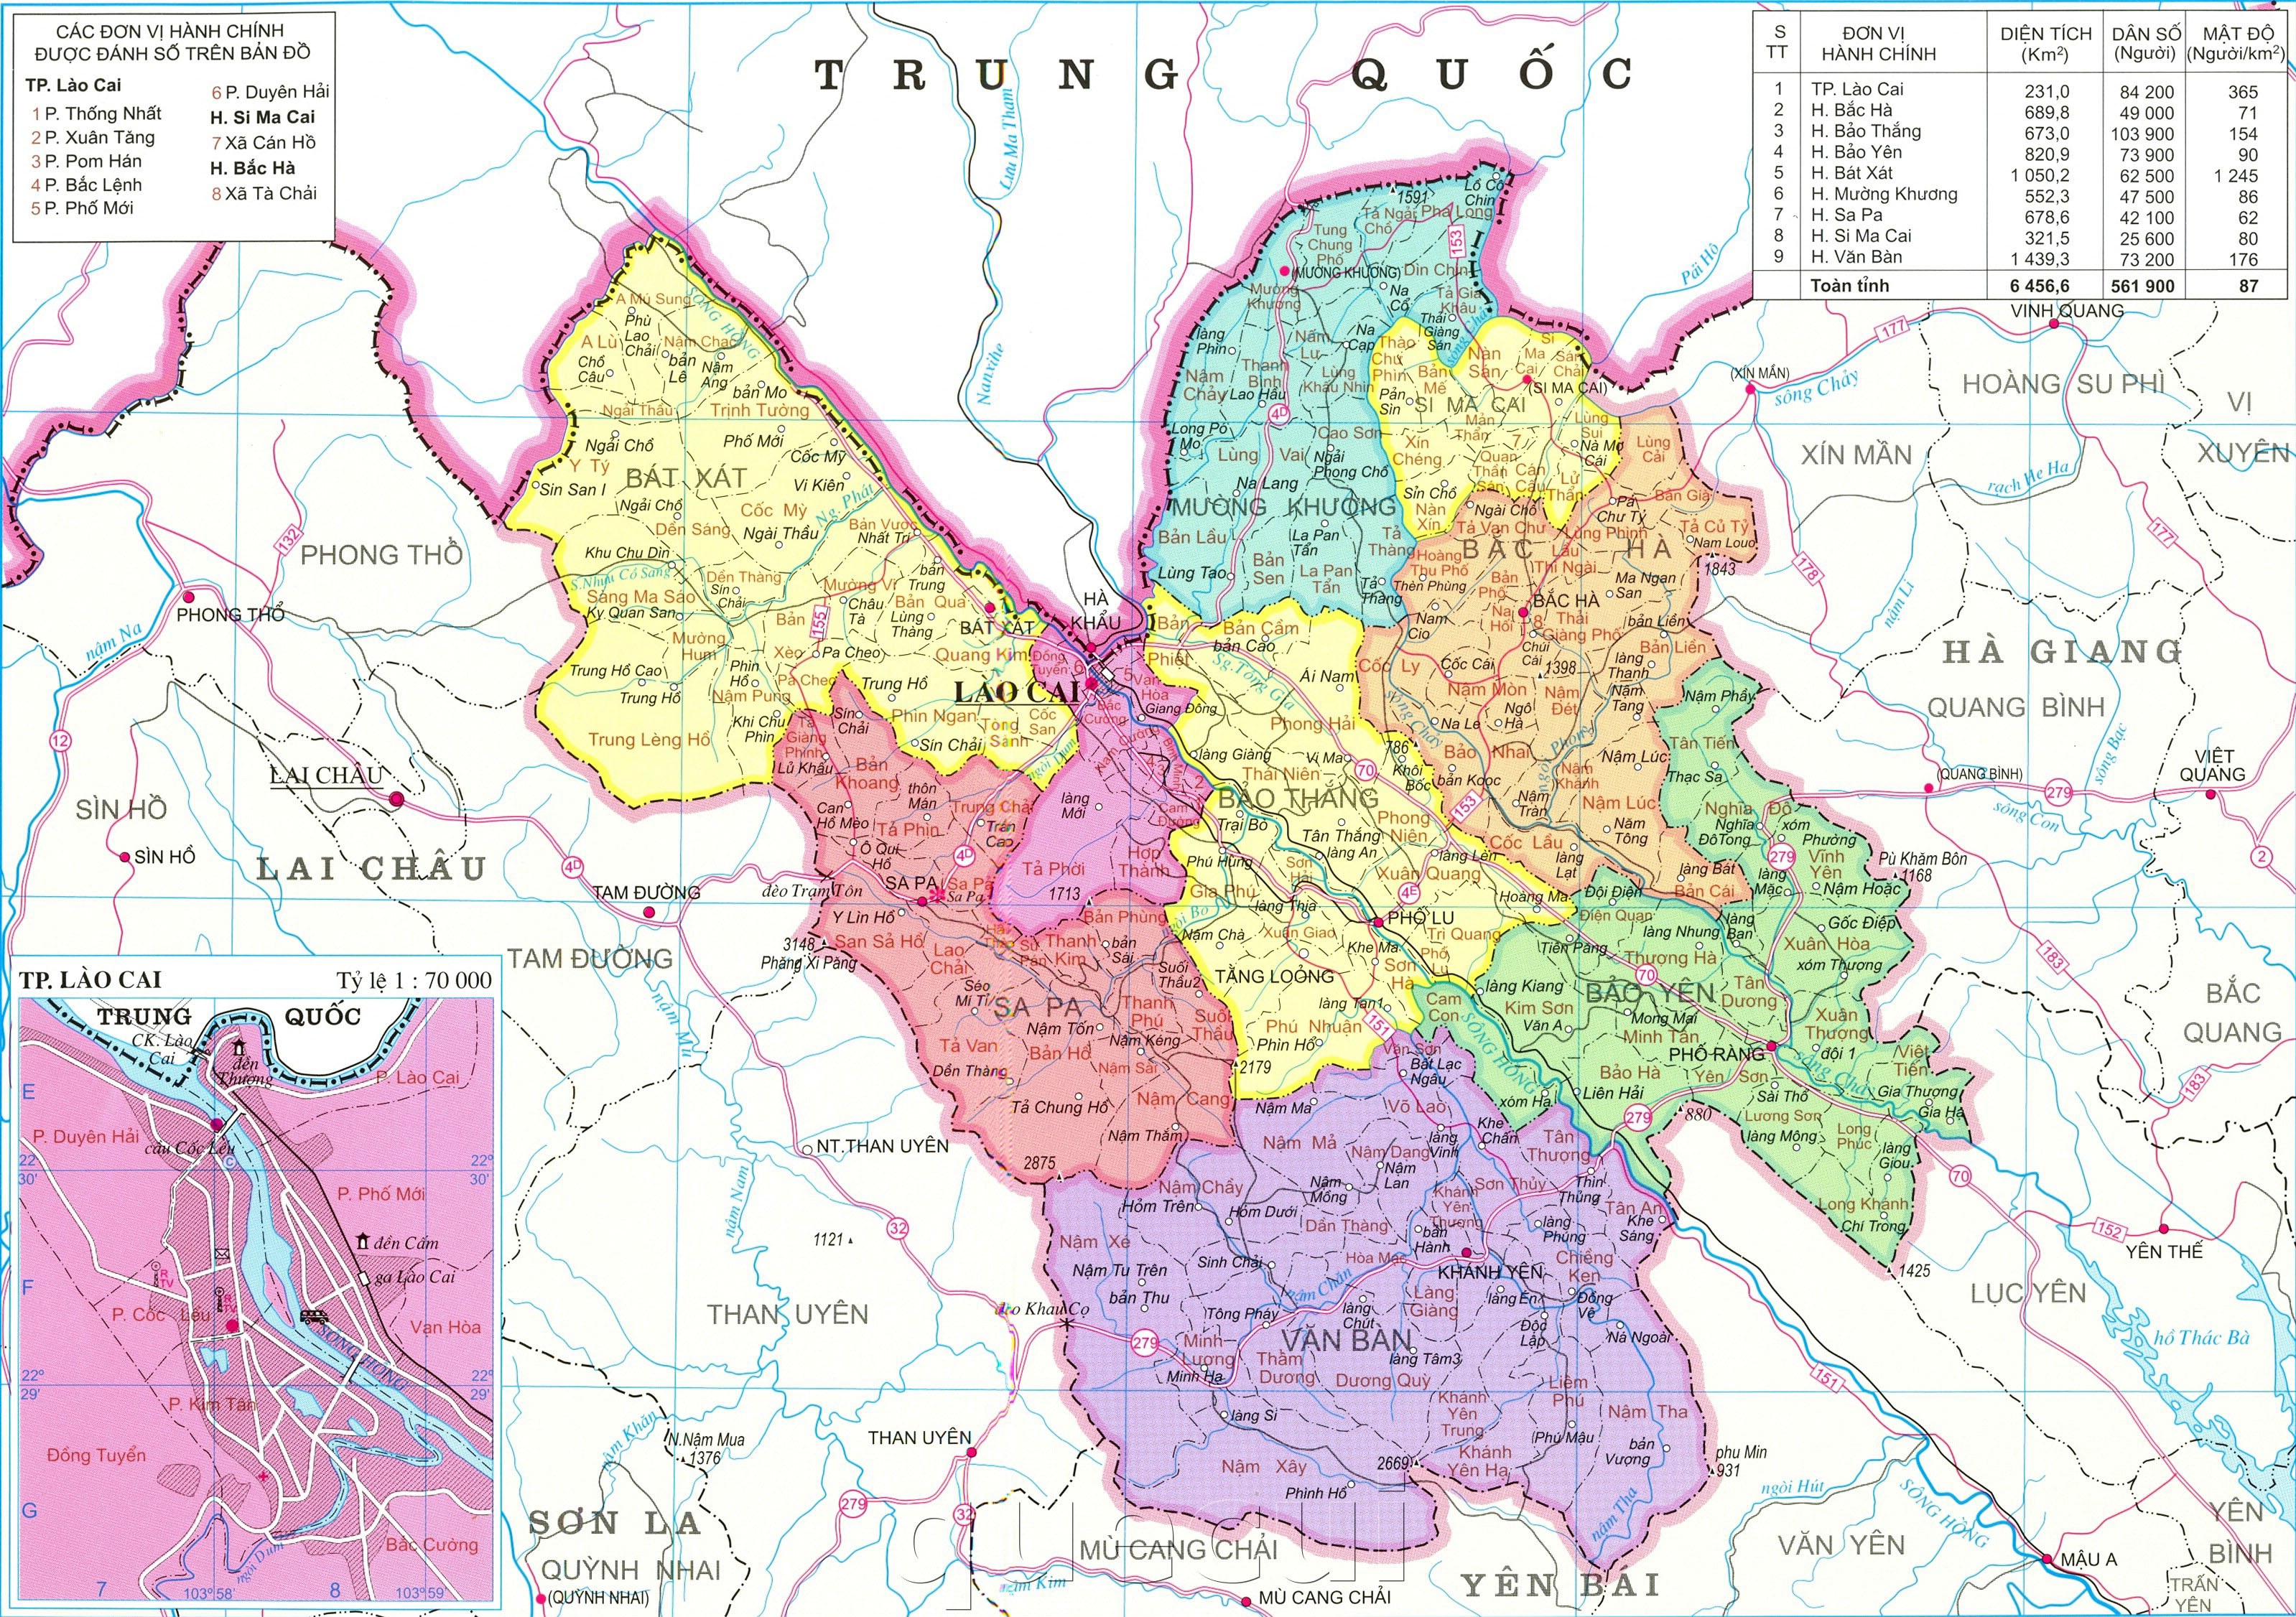 Tải bản đồ hành chính tỉnh Lào Cai ngay tại Điện thoại. Bản cập nhật đến năm 2024 với thông tin chính xác về các tuyến đường, điểm đến cũng như các lễ hội sắp tới sẽ giúp bạn có kế hoạch và khả năng tìm đường đến các vùng sâu của Lào Cai.